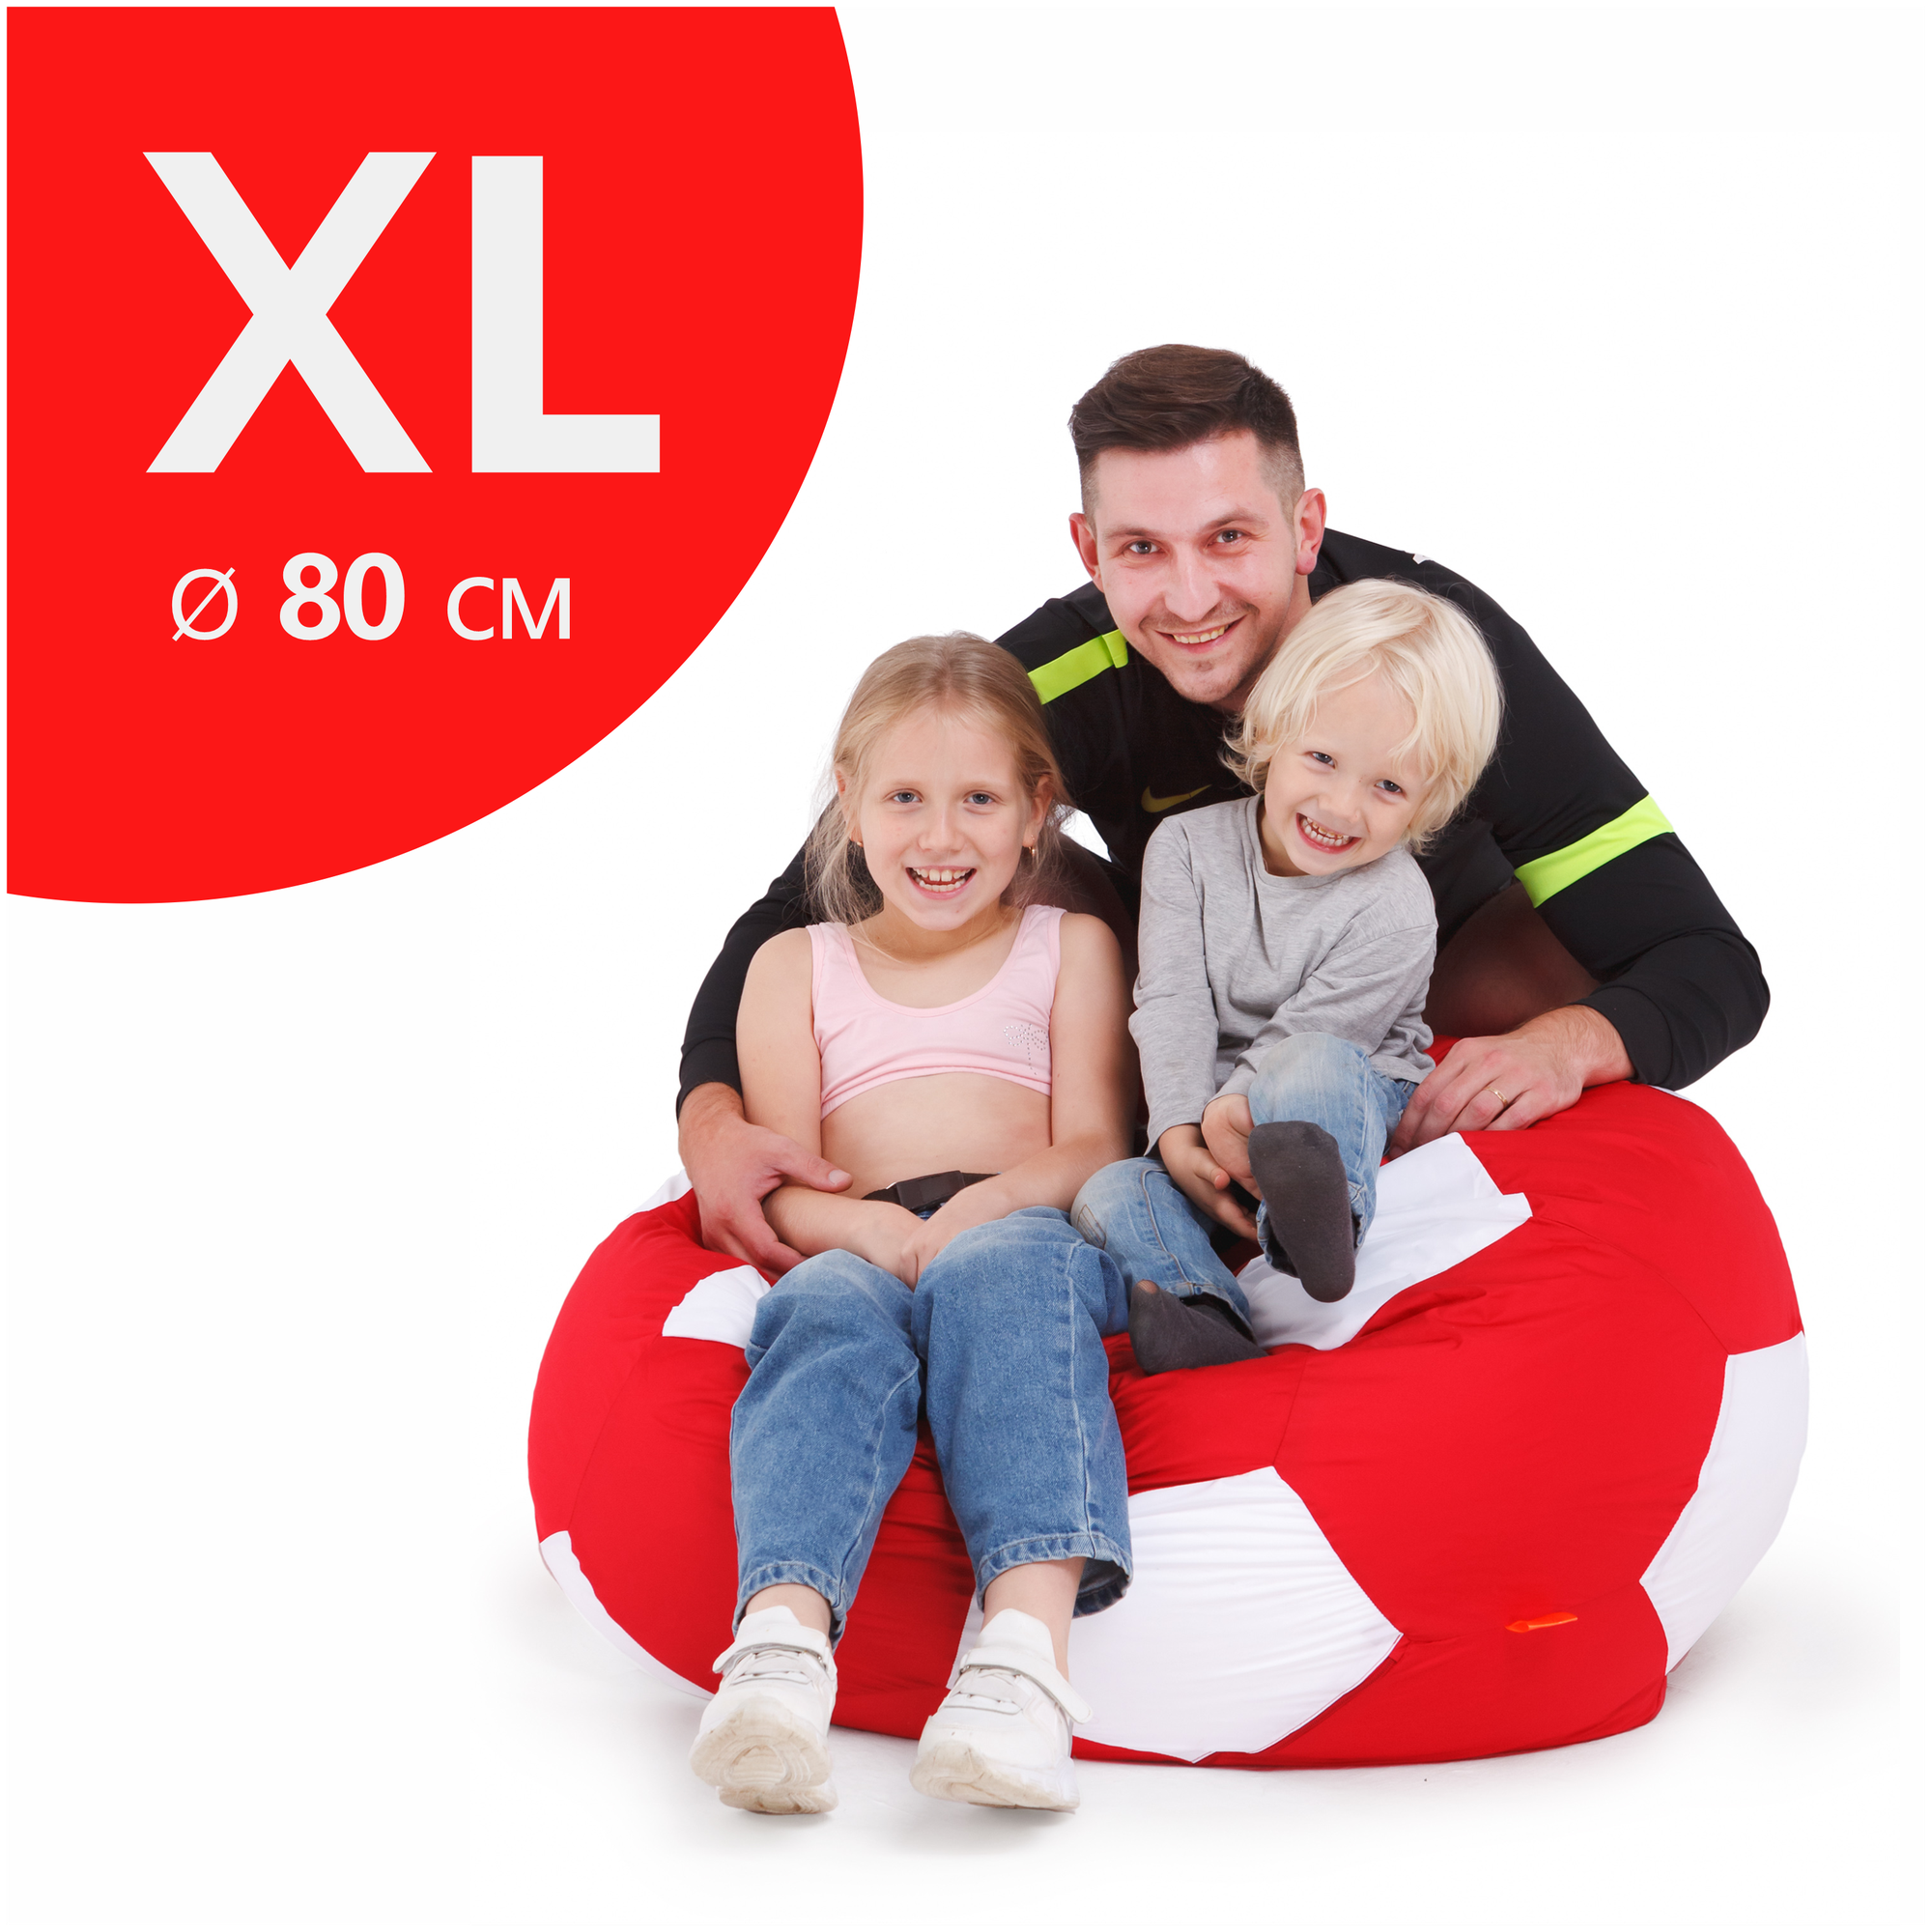 Кресло-мяч АртБинБэг, ткань оксфорд, размер XL, 80 см